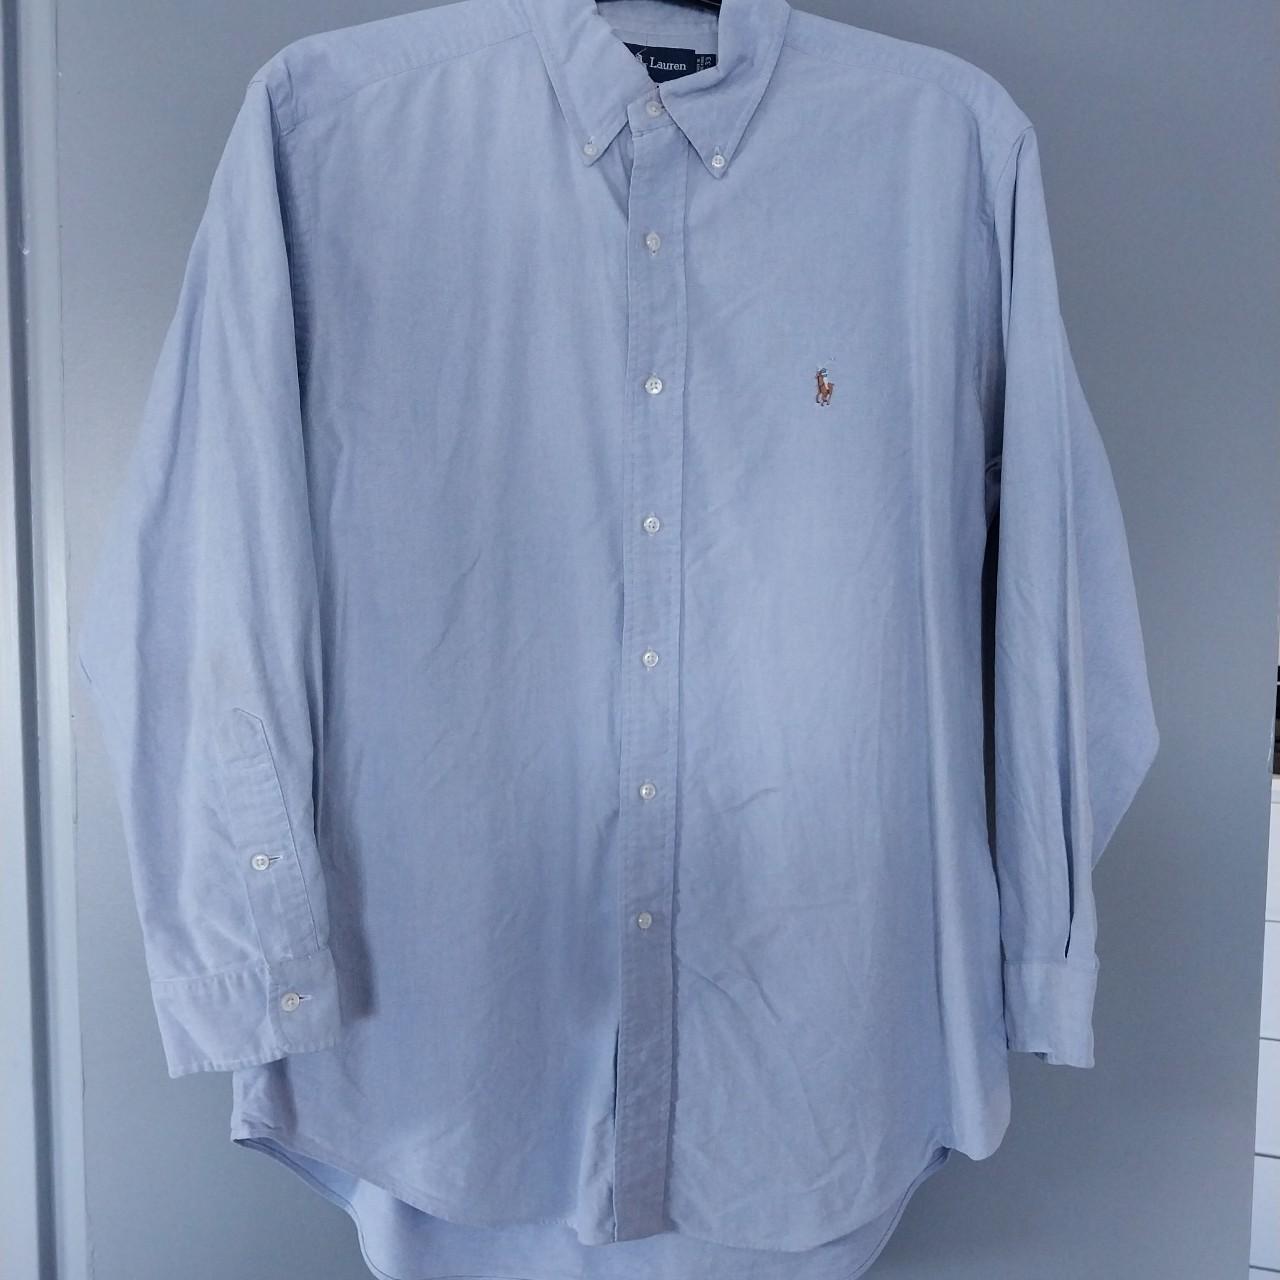 Pale blue Ralph Lauren Shirt #ralphlauren - Depop